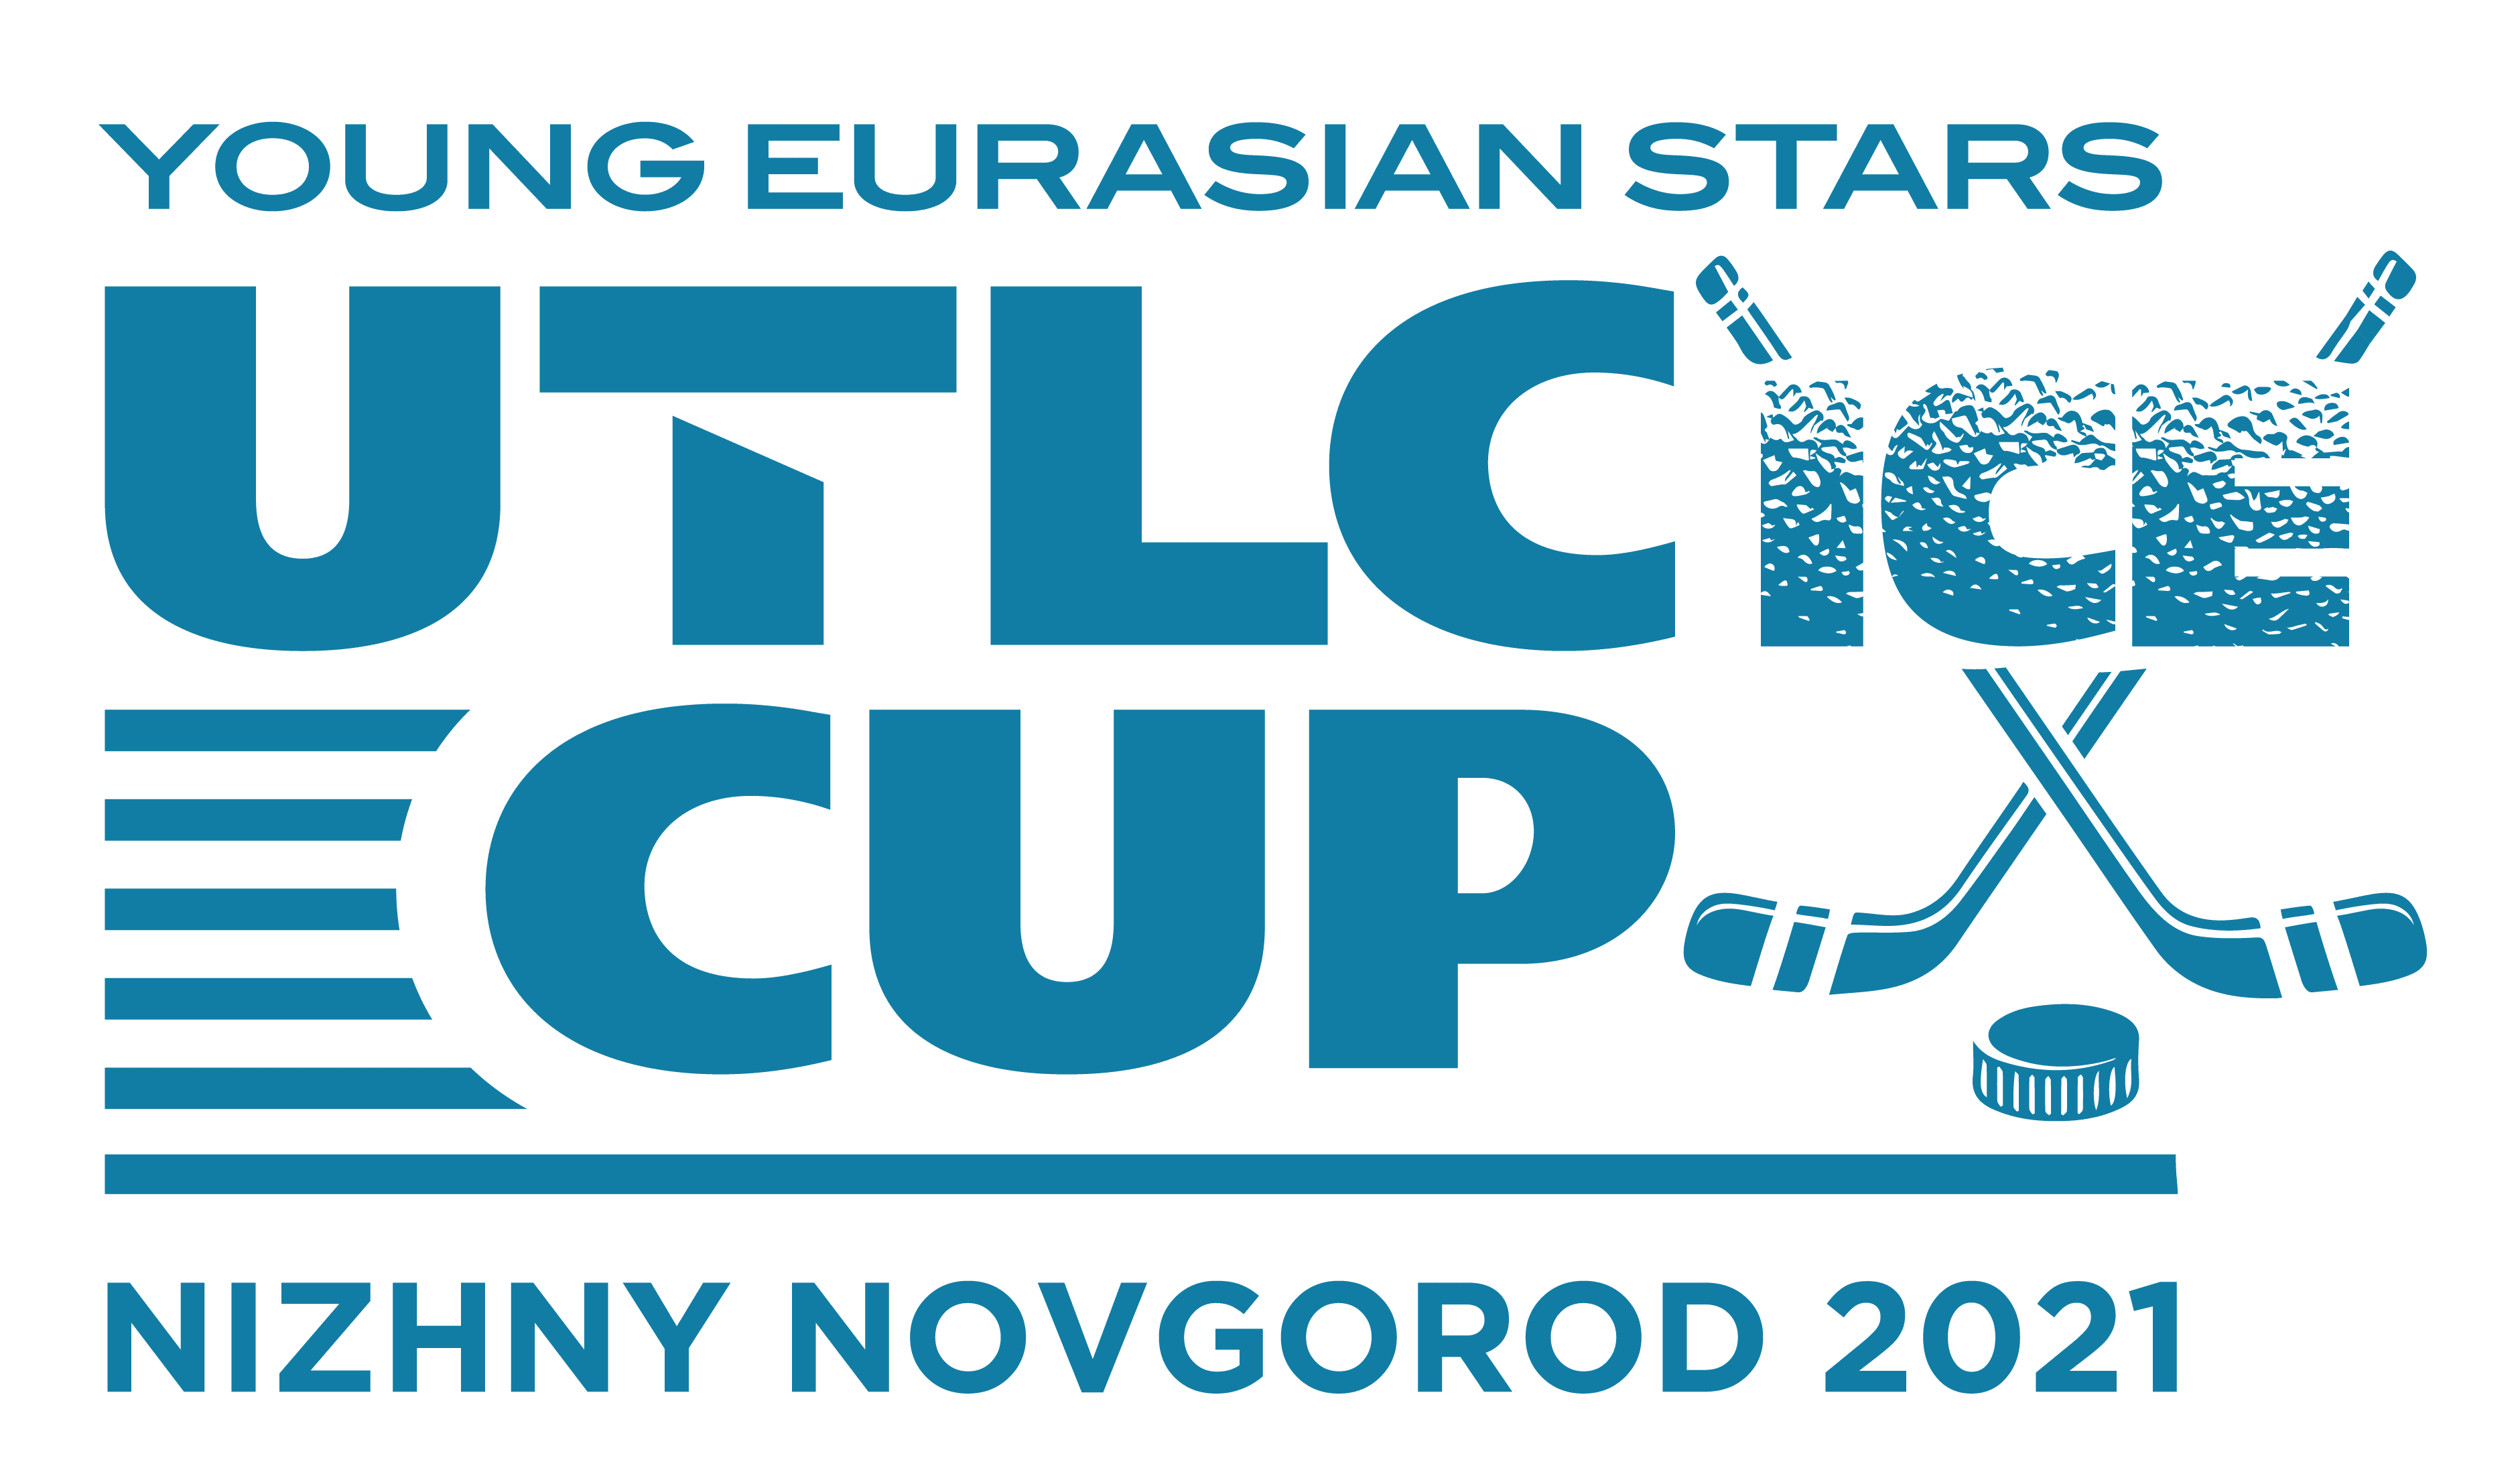 UTLC ICE CUP 2021 пройдет в Нижнем Новгороде!